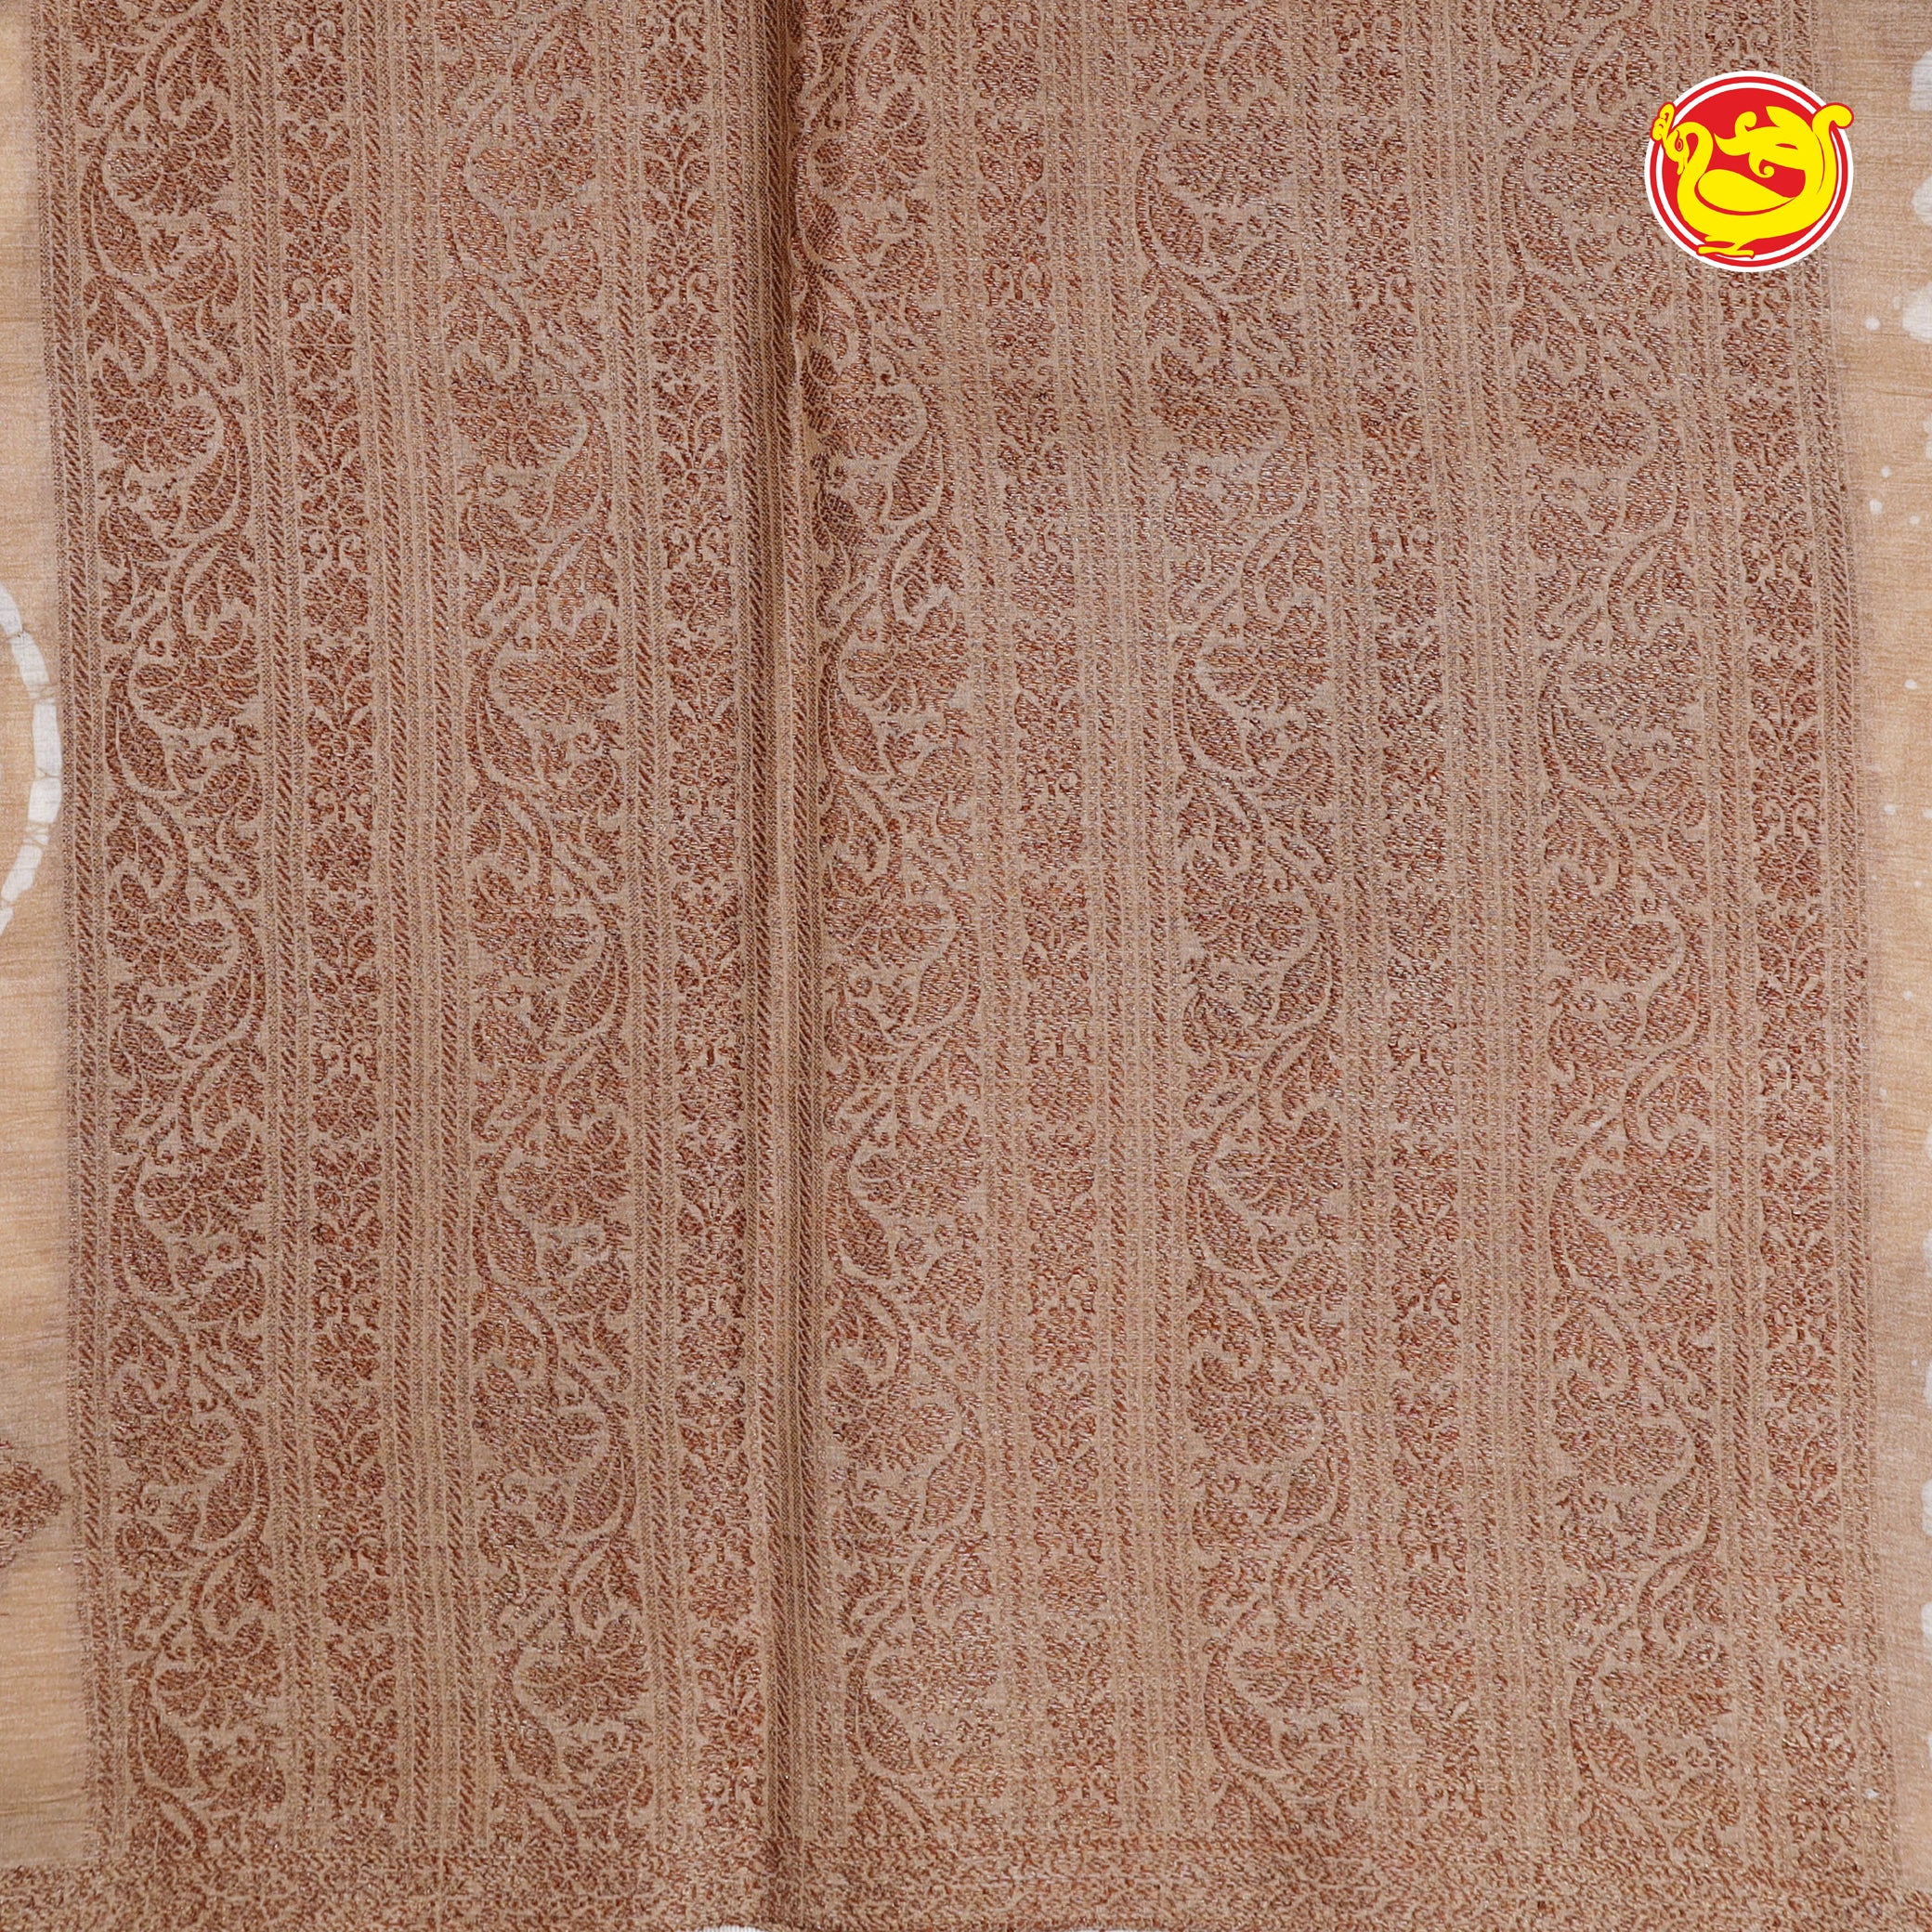 Pastel brown pure tussar saree with batik prints